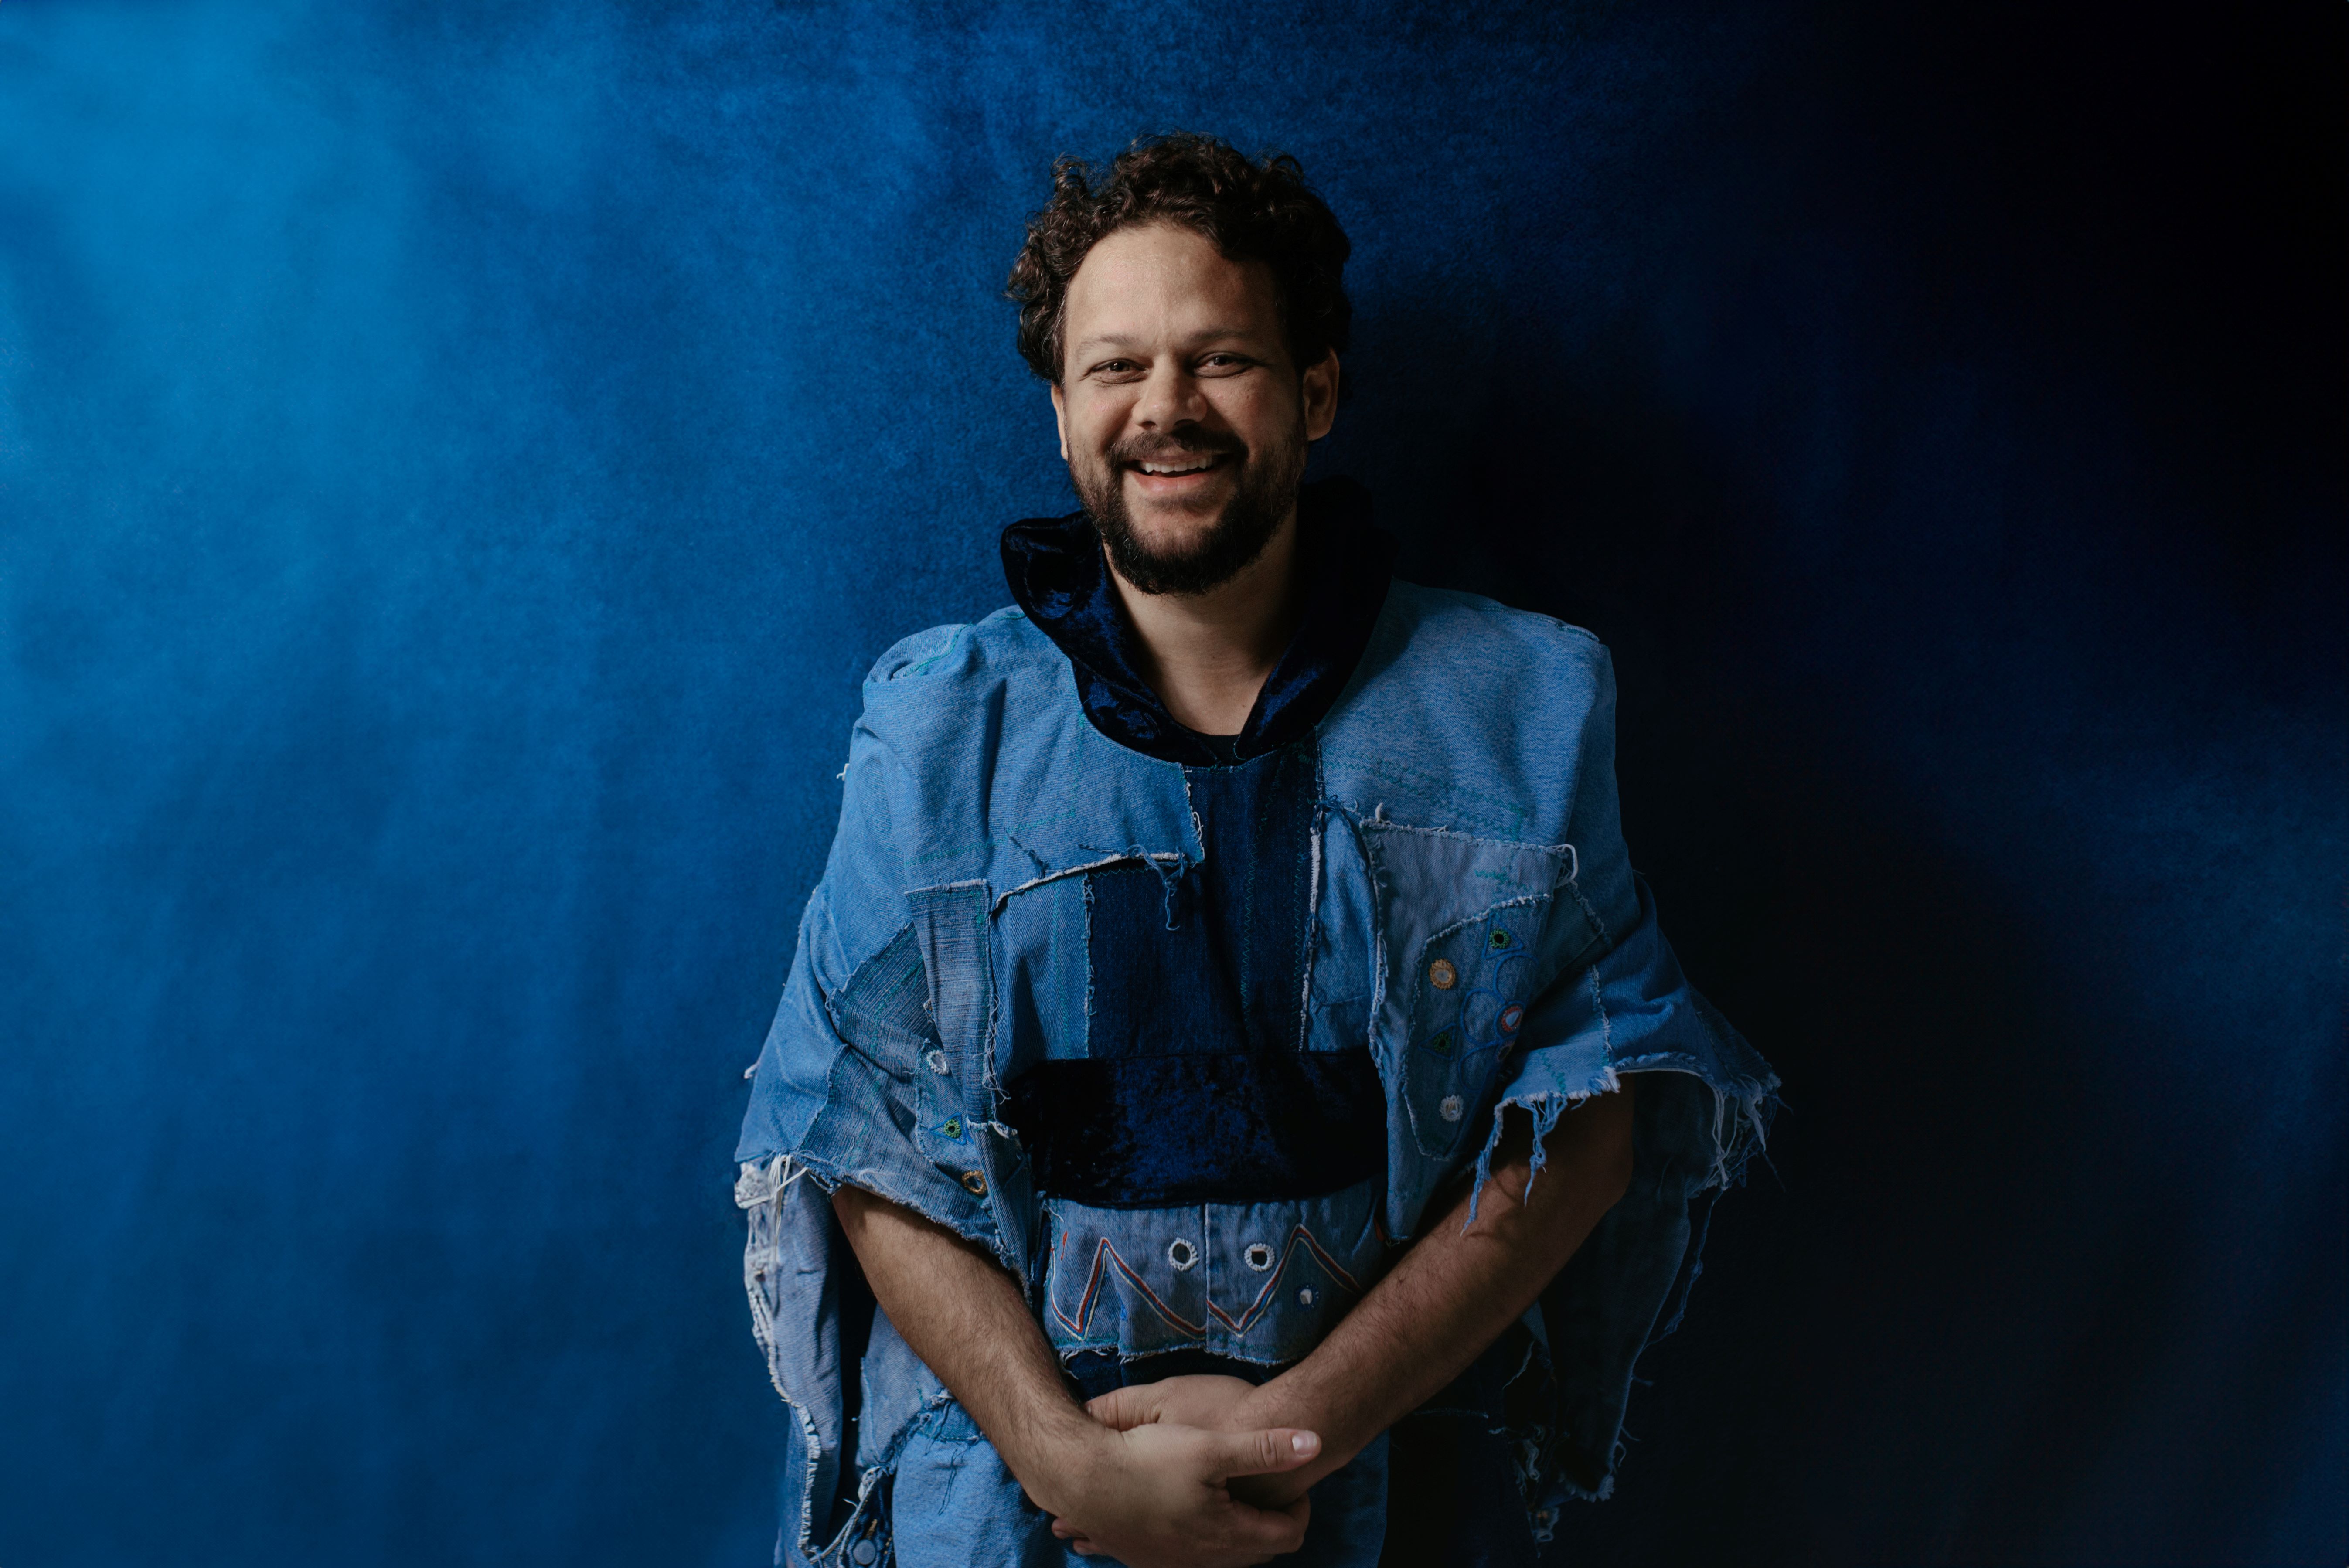 Foto do cantor em pé, sorrindo e posando em um cenário com fundo azul